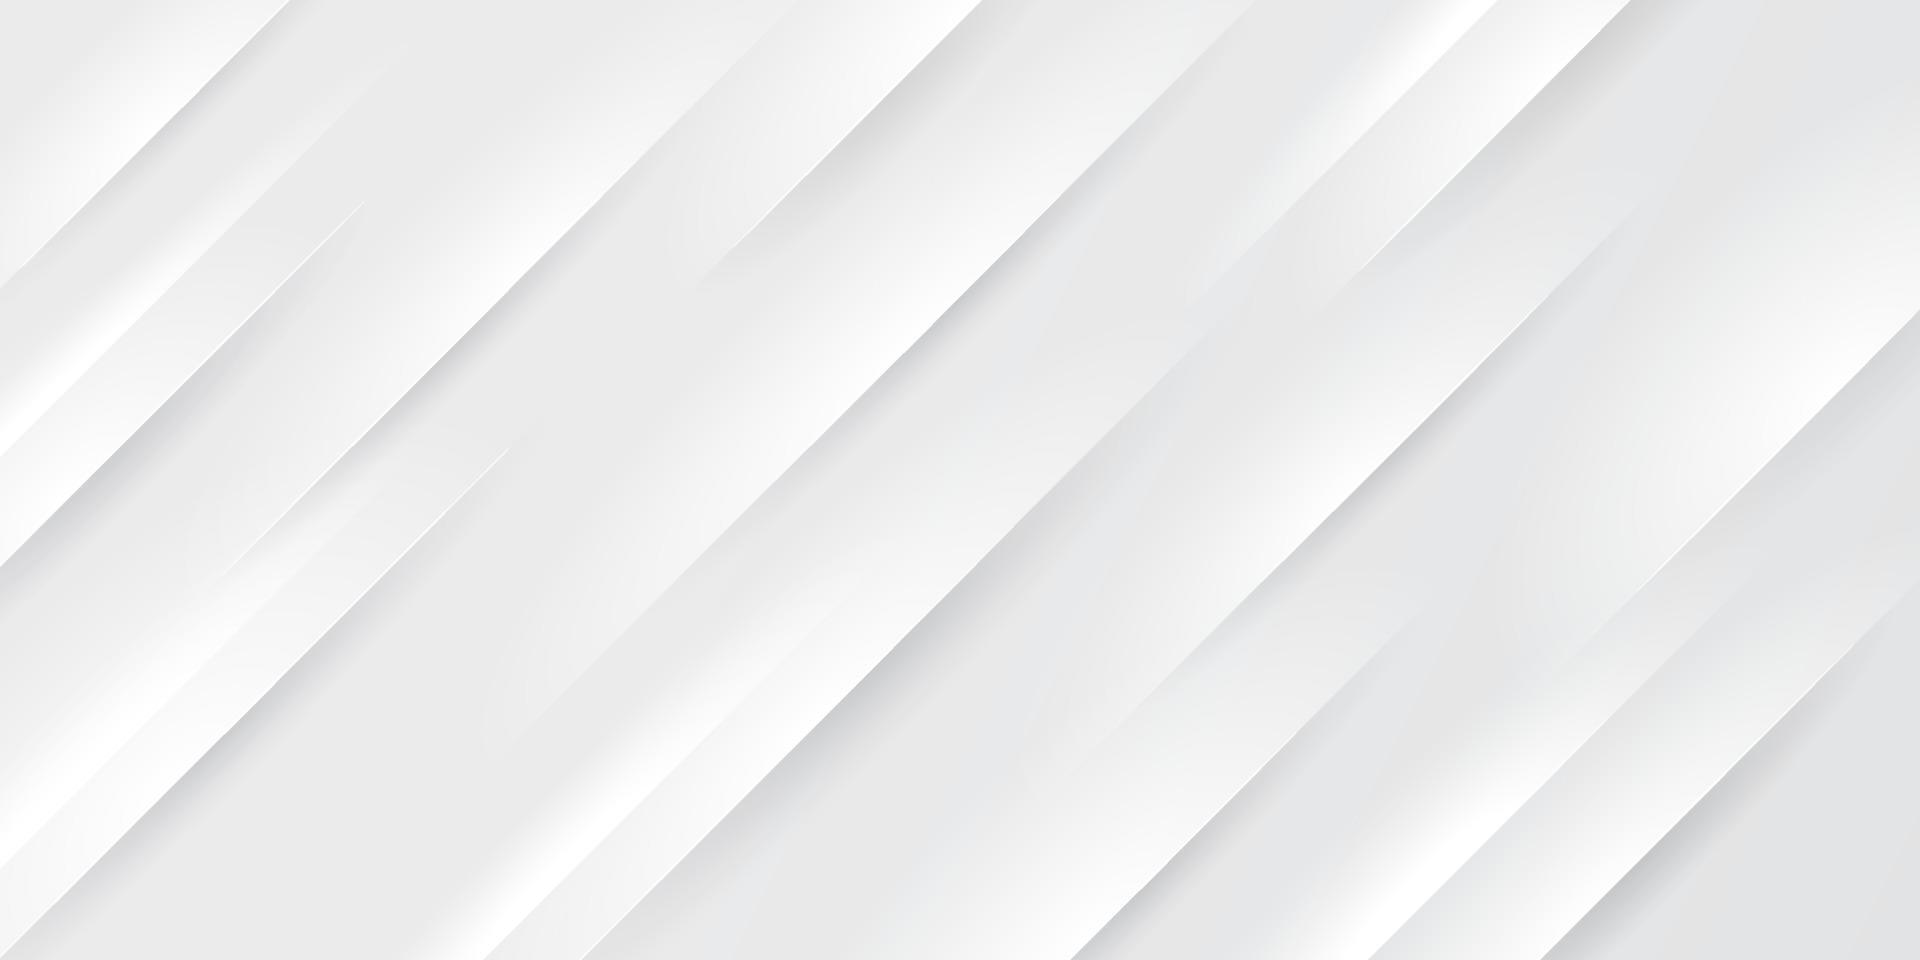 Color degradado blanco y gris abstracto con fondo de rayas de líneas oblicuas. patrón geométrico minimalista textura elegante moderna. concepto simple de corte de papel. ilustración vectorial vector